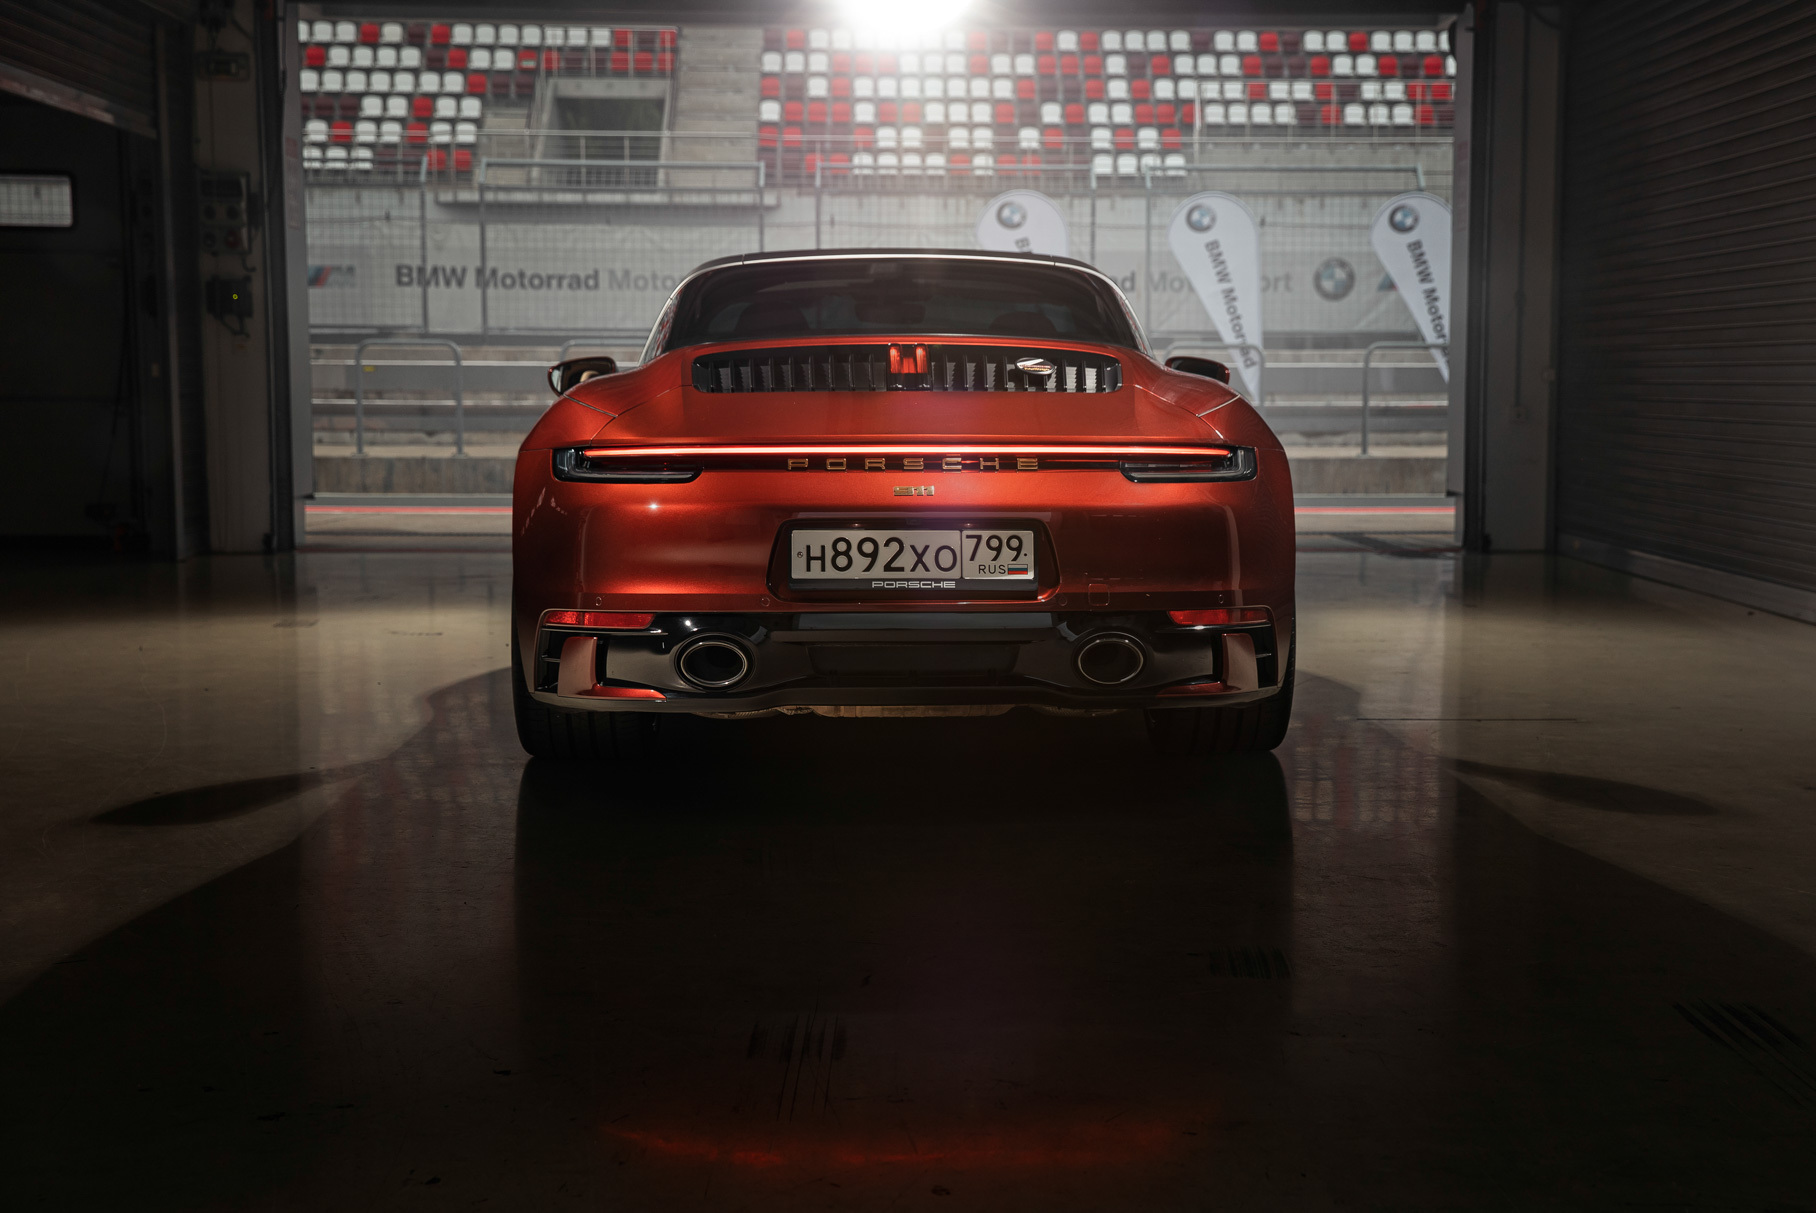 Мечта коллекционера: тестируем редкий Porsche 911 Targa